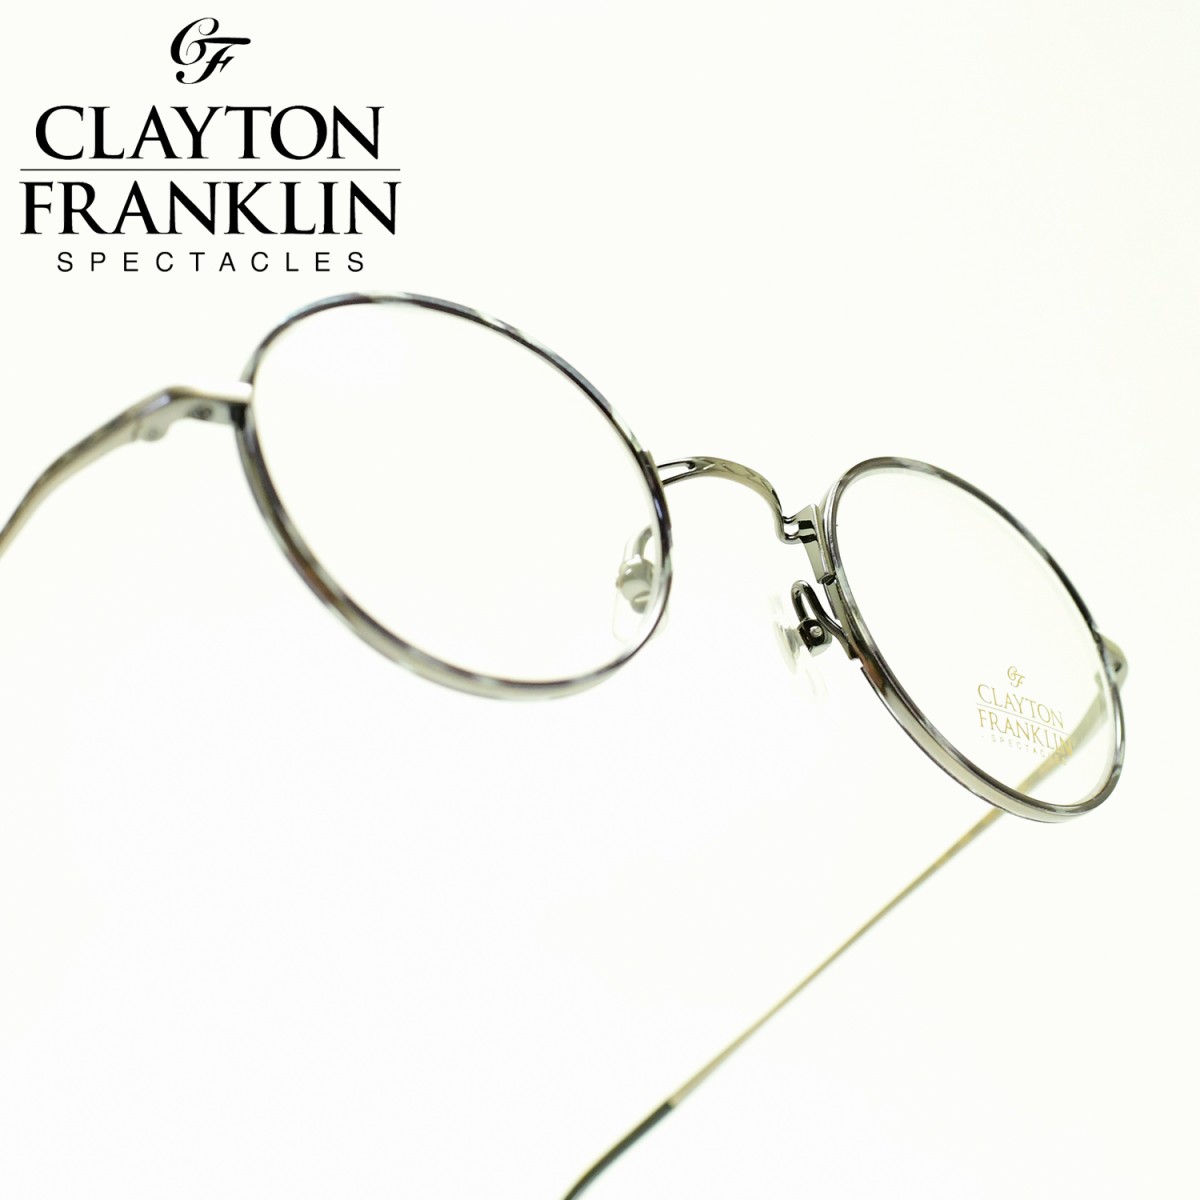 Clayton Franklin クレイトンフランクリン636 As アンティークシルバー デモレンズ メガネ 眼鏡 めがね メンズ レディース おしゃれブランド 人気 おすすめ フレーム 流行り 度付き レンズ